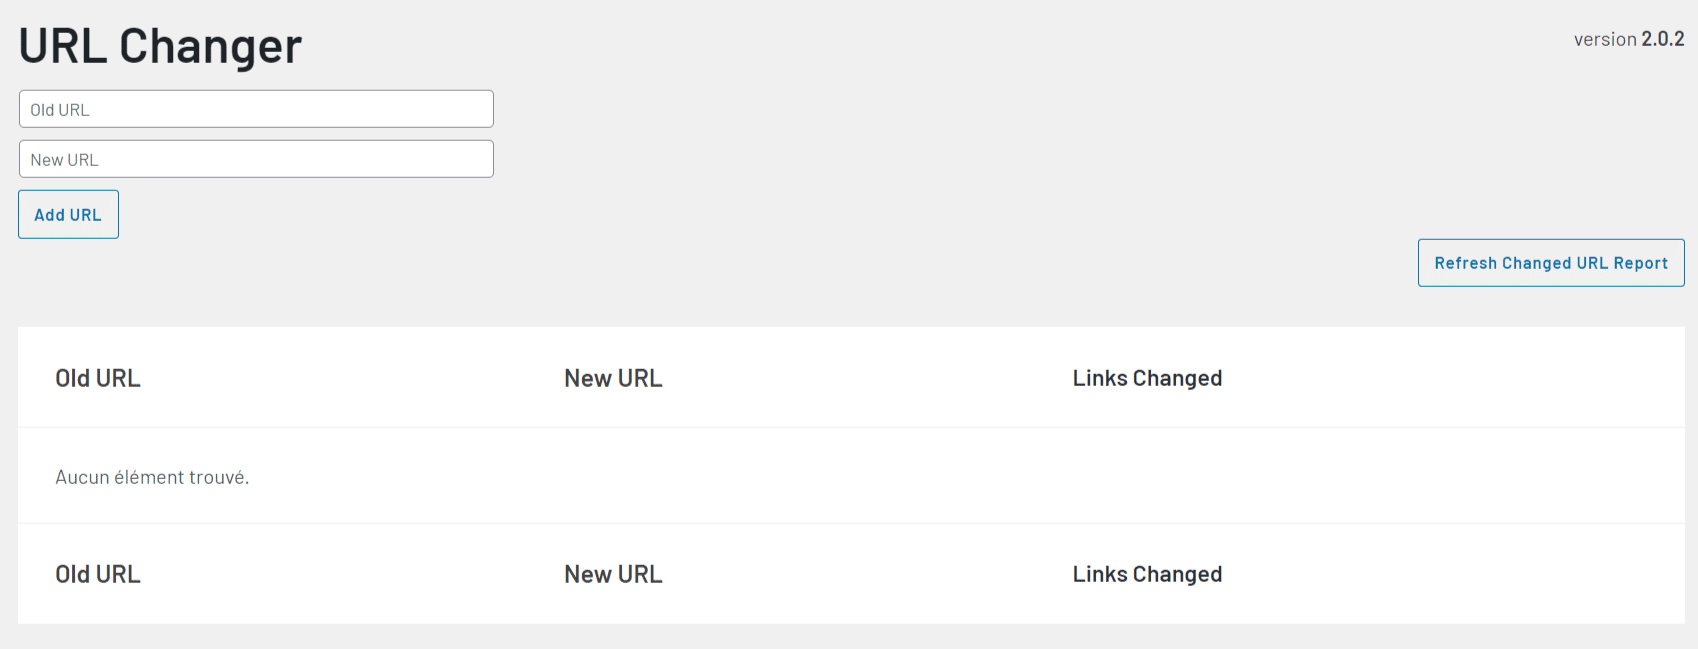 link whisper - URL Changer